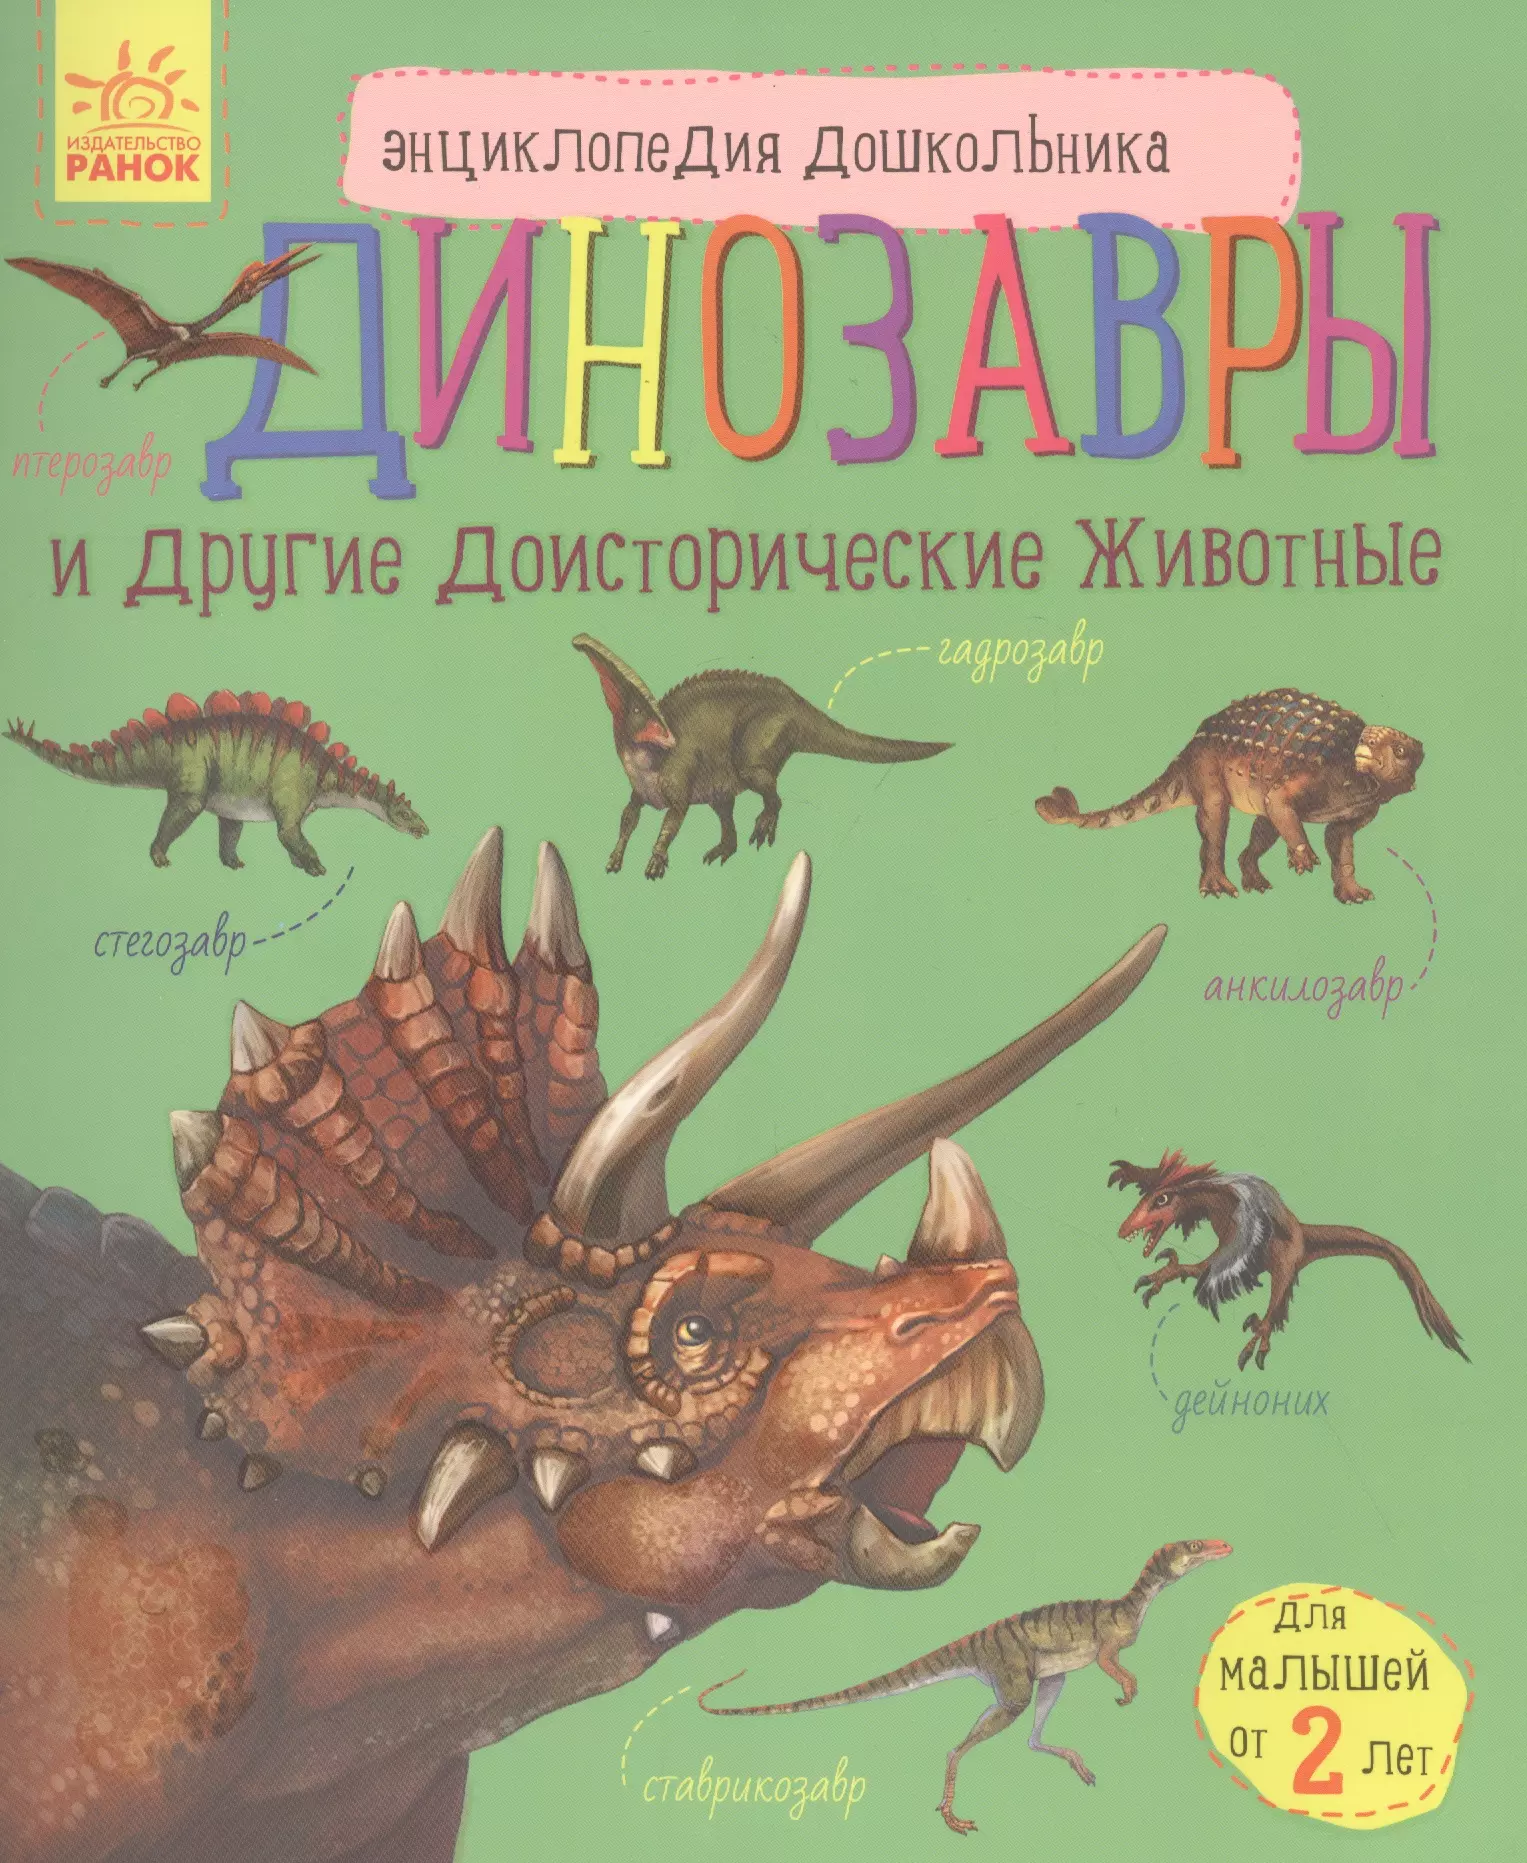 Каспарова Юлия Владимировна - Динозавры и другие доисторические животные